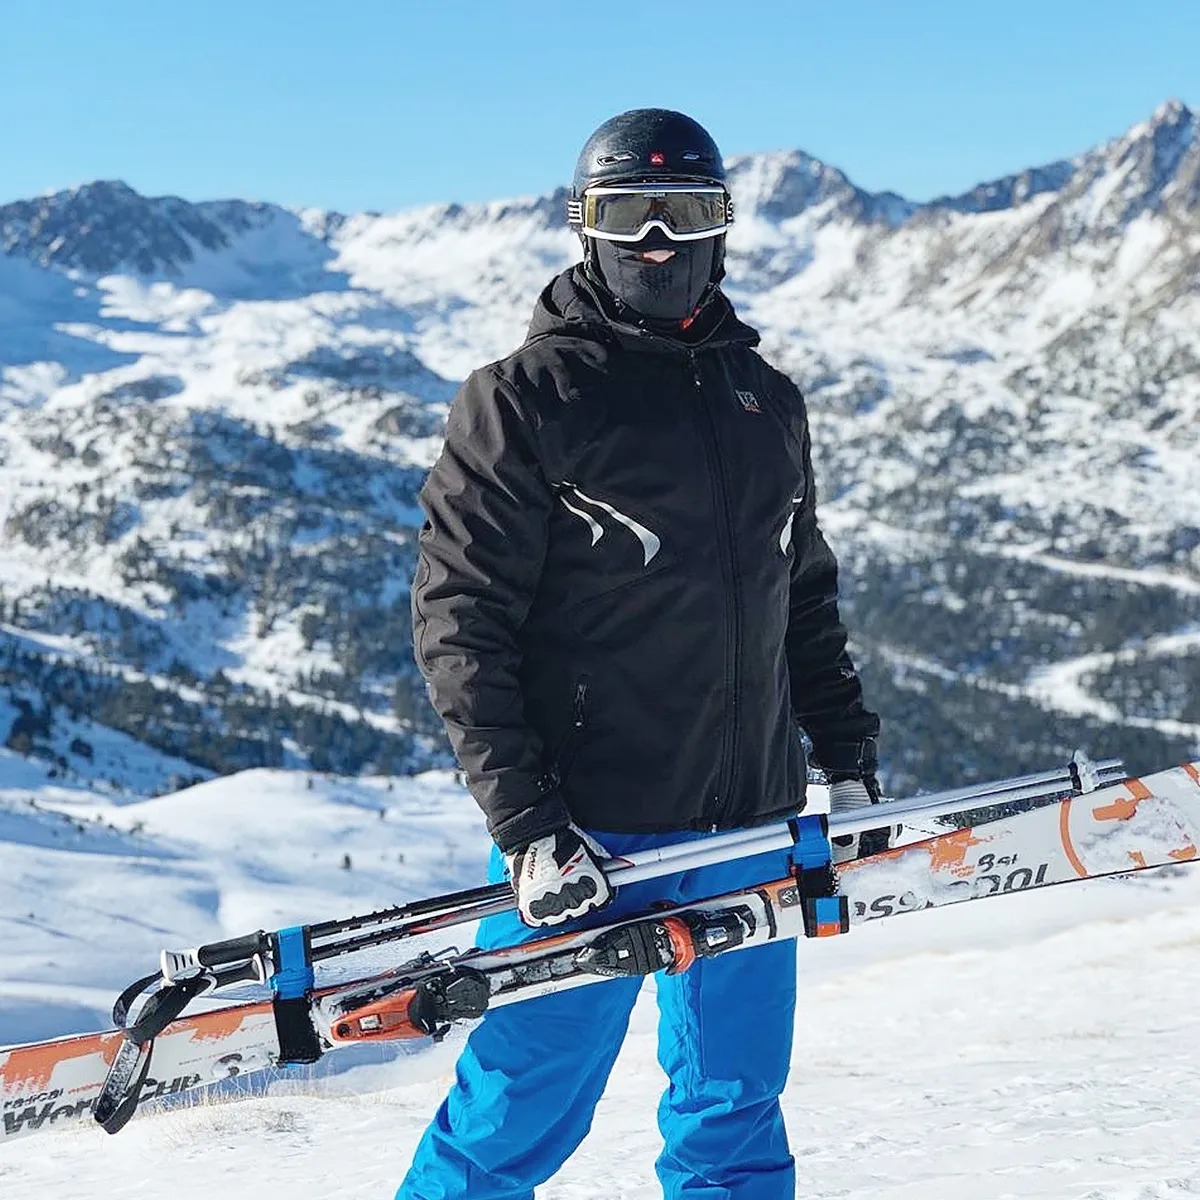 Приспособление для переноски лыж и лыжных палок SKI-N-GO Blue 40-59 S